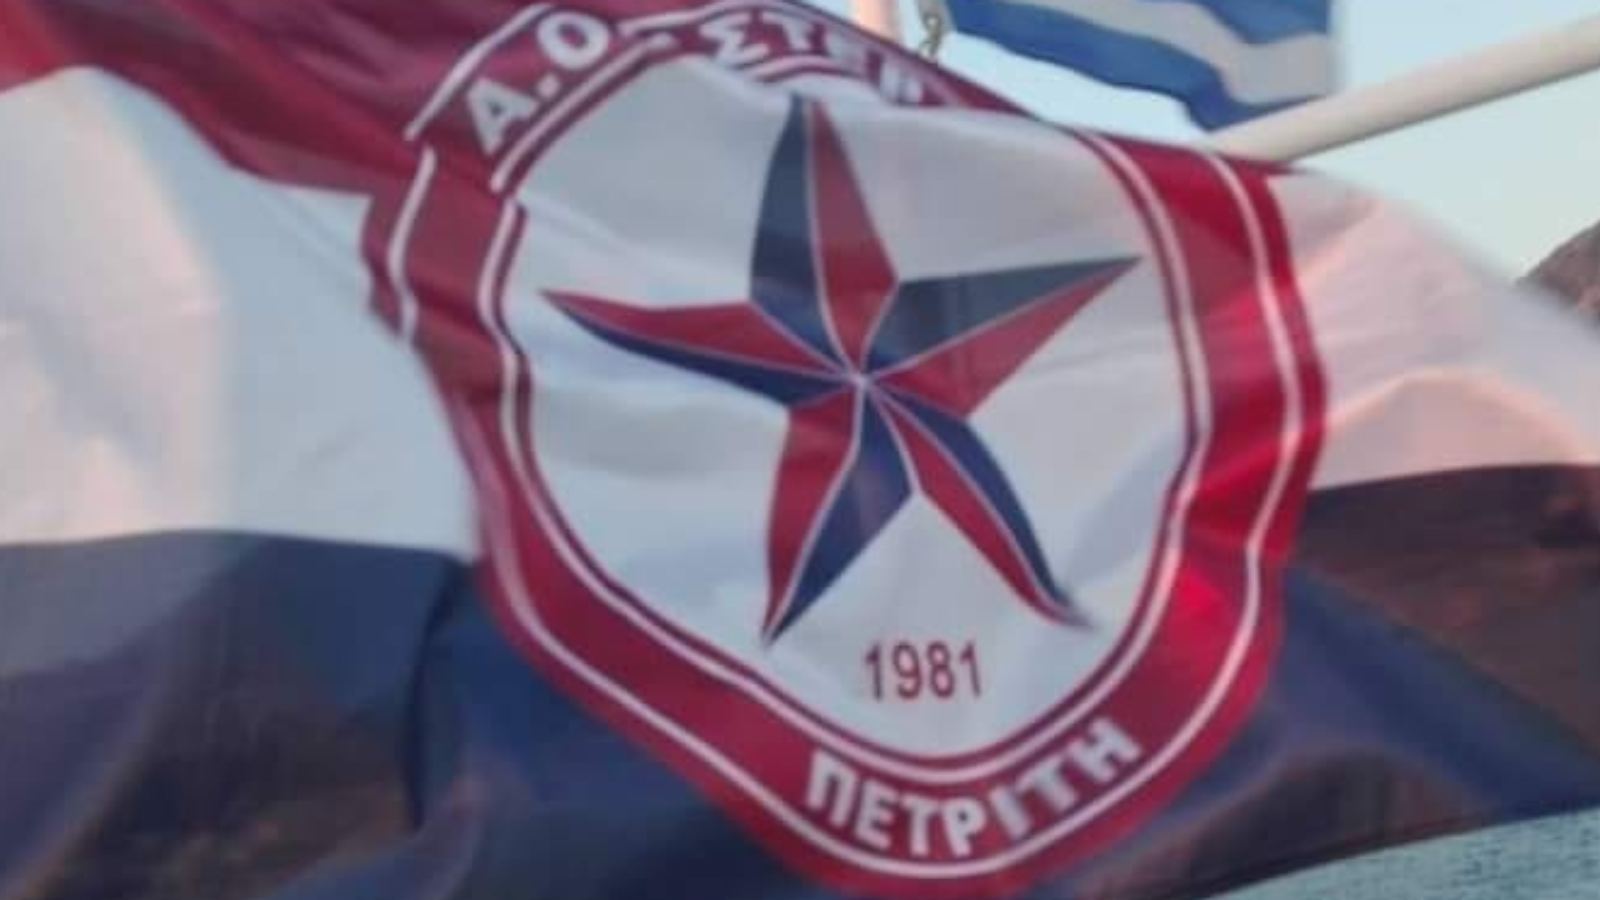 Στον ιστό της θα παραμείνει για ακόμη μια ποδοσφαιρική σεζόν η … σημαία του Αστέρα Πετριτή